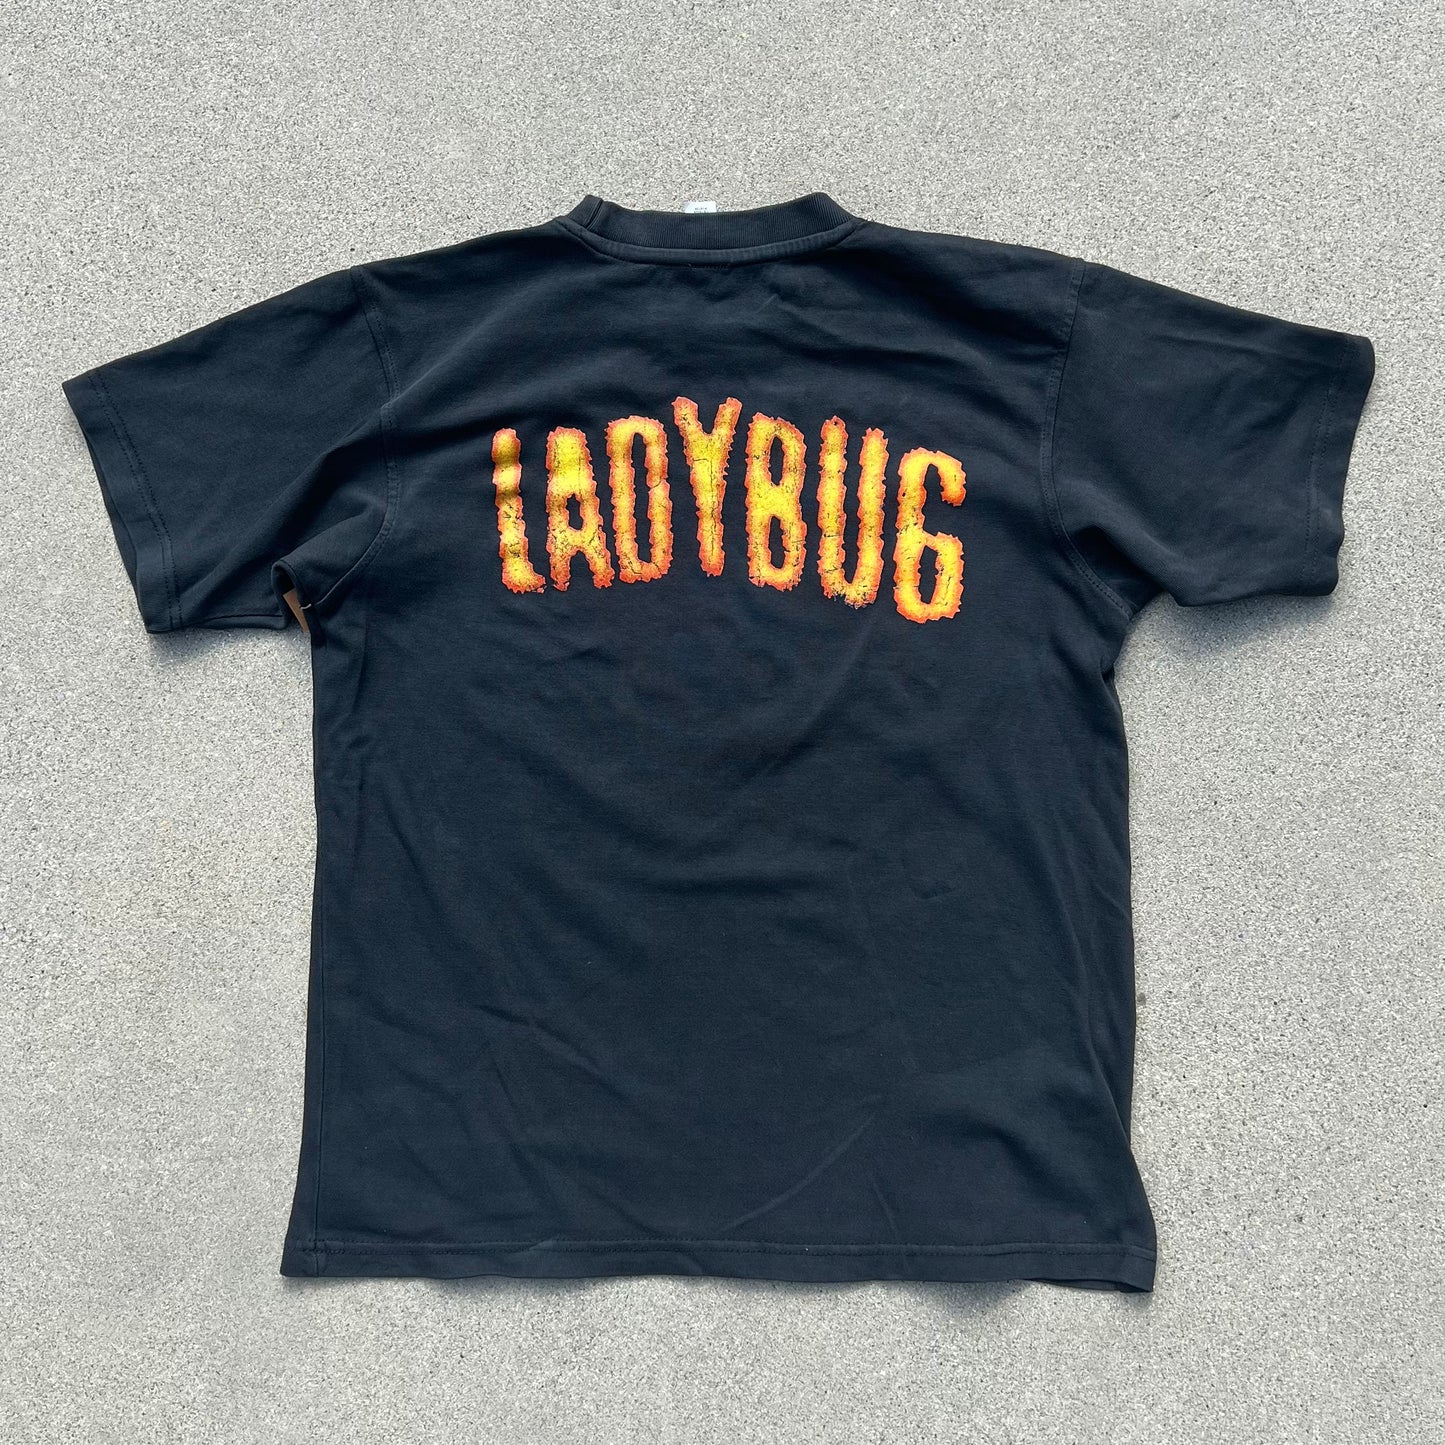 Ladybug Tee